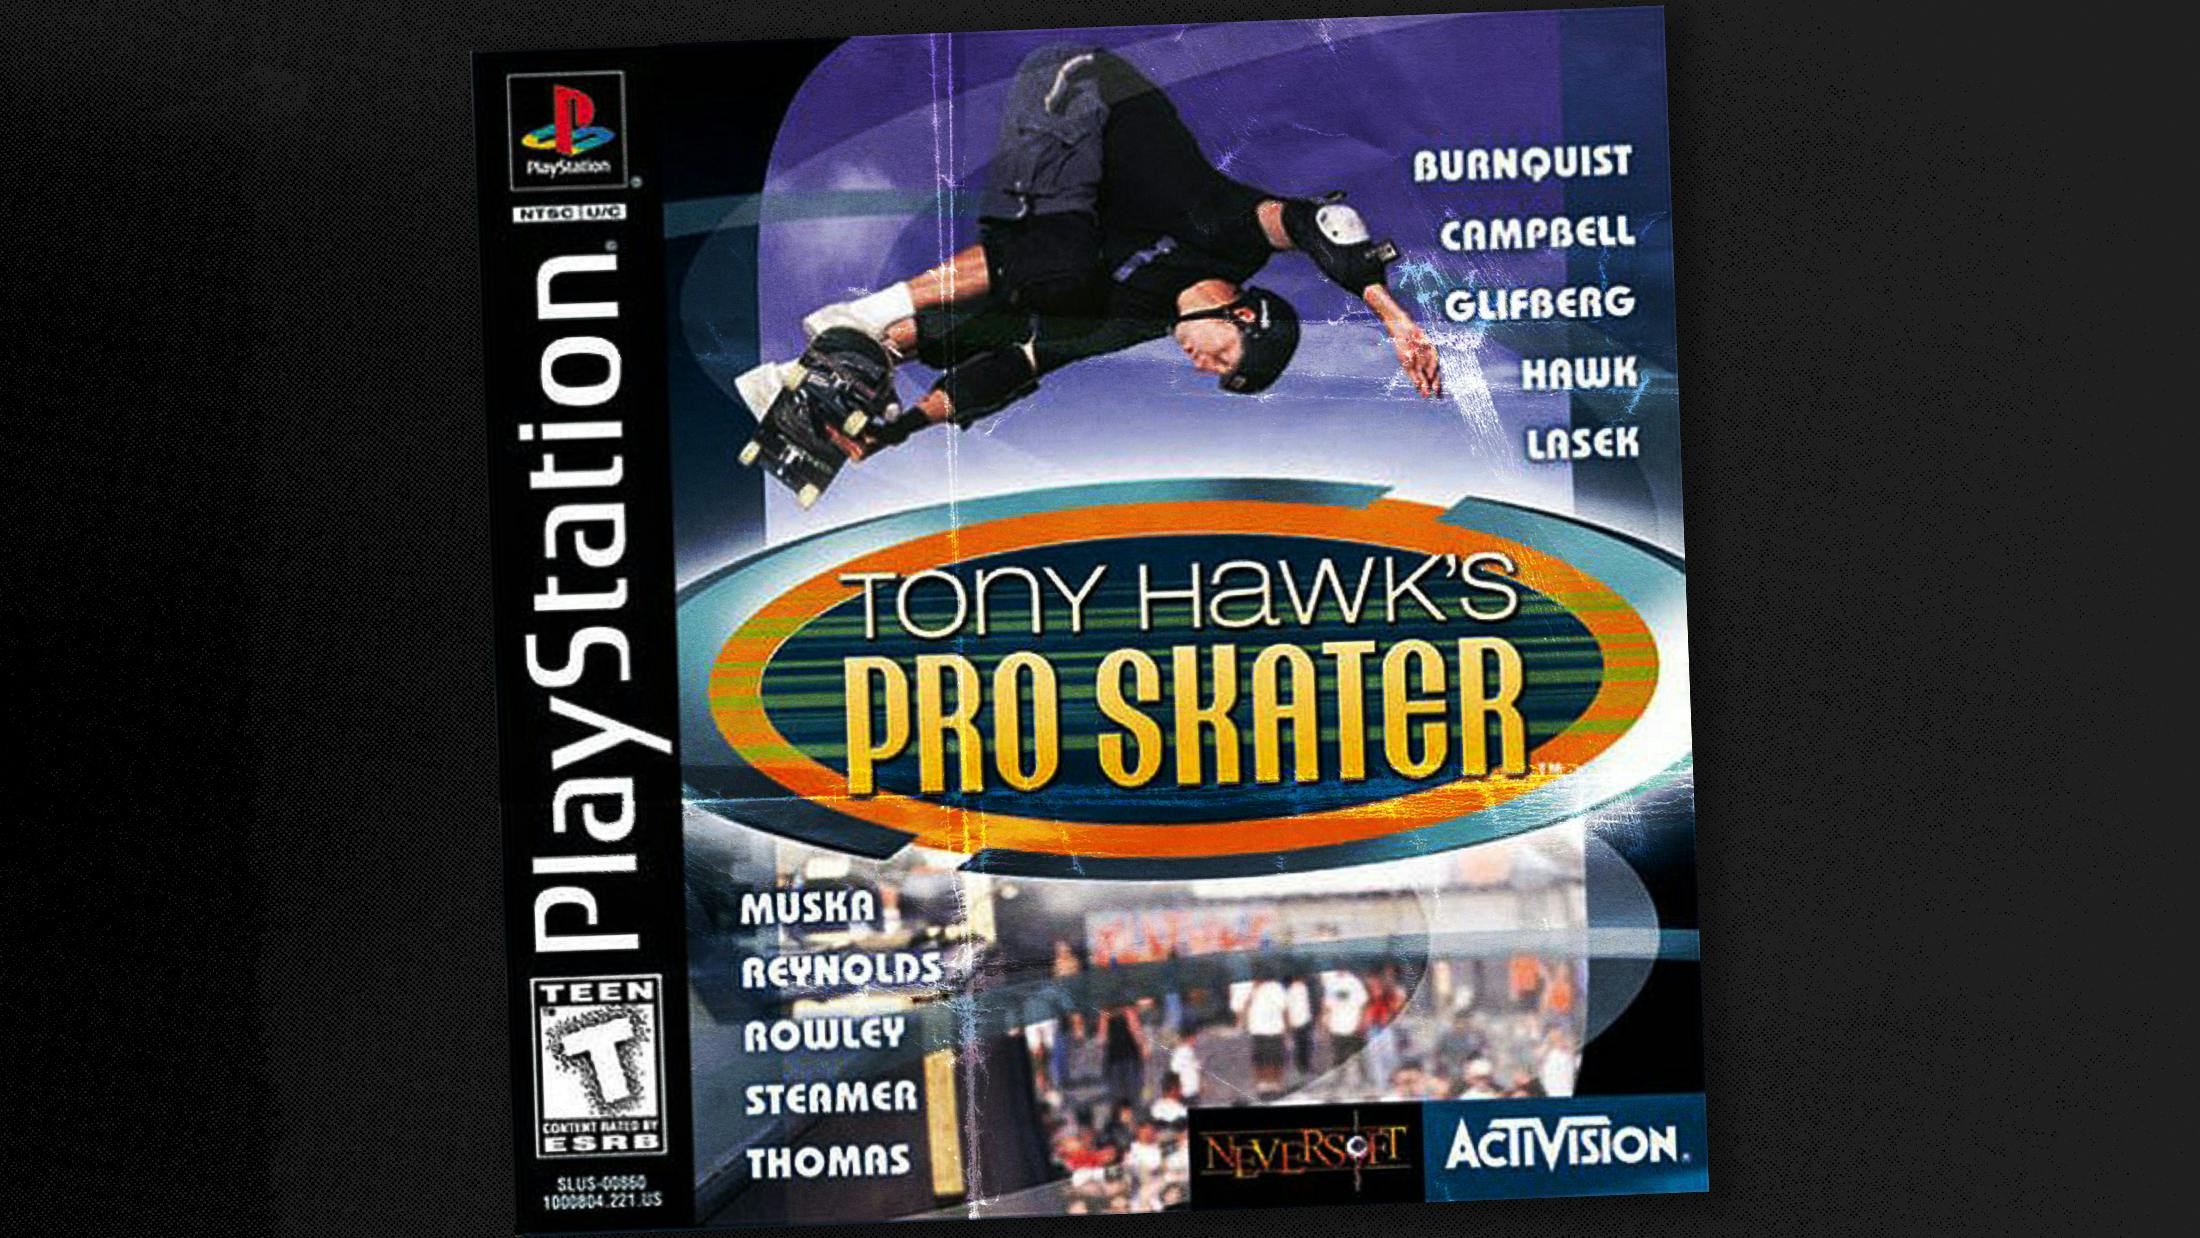 An oral history of the Tony Hawk’s Pro Skater soundtrack, by Tony Hawk and John Feldmann